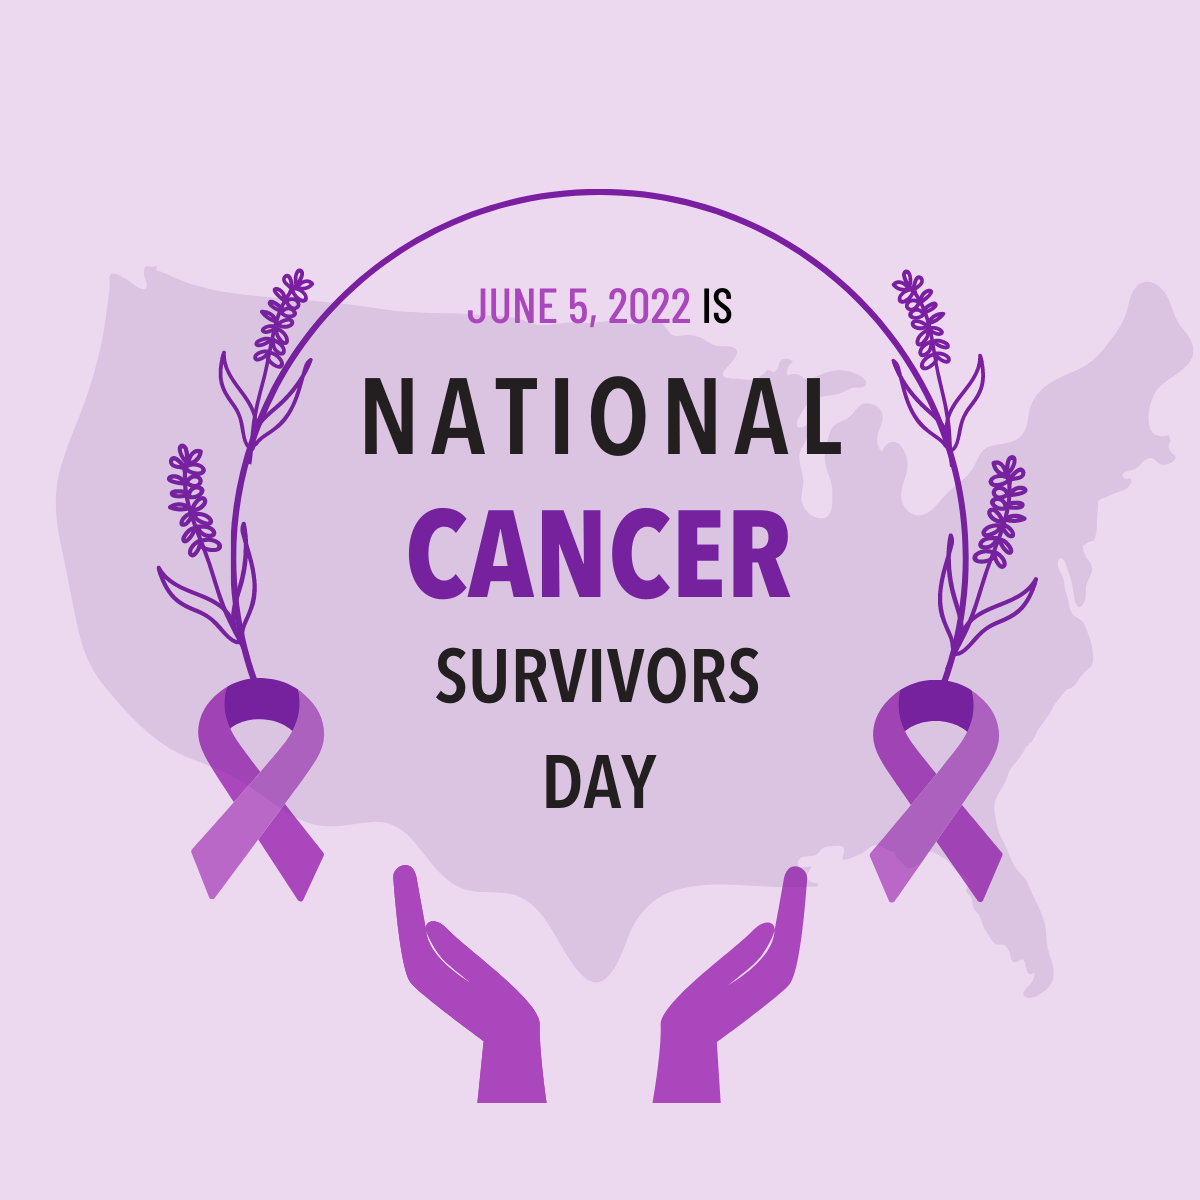 Celebrating National Cancer Survivor's Day